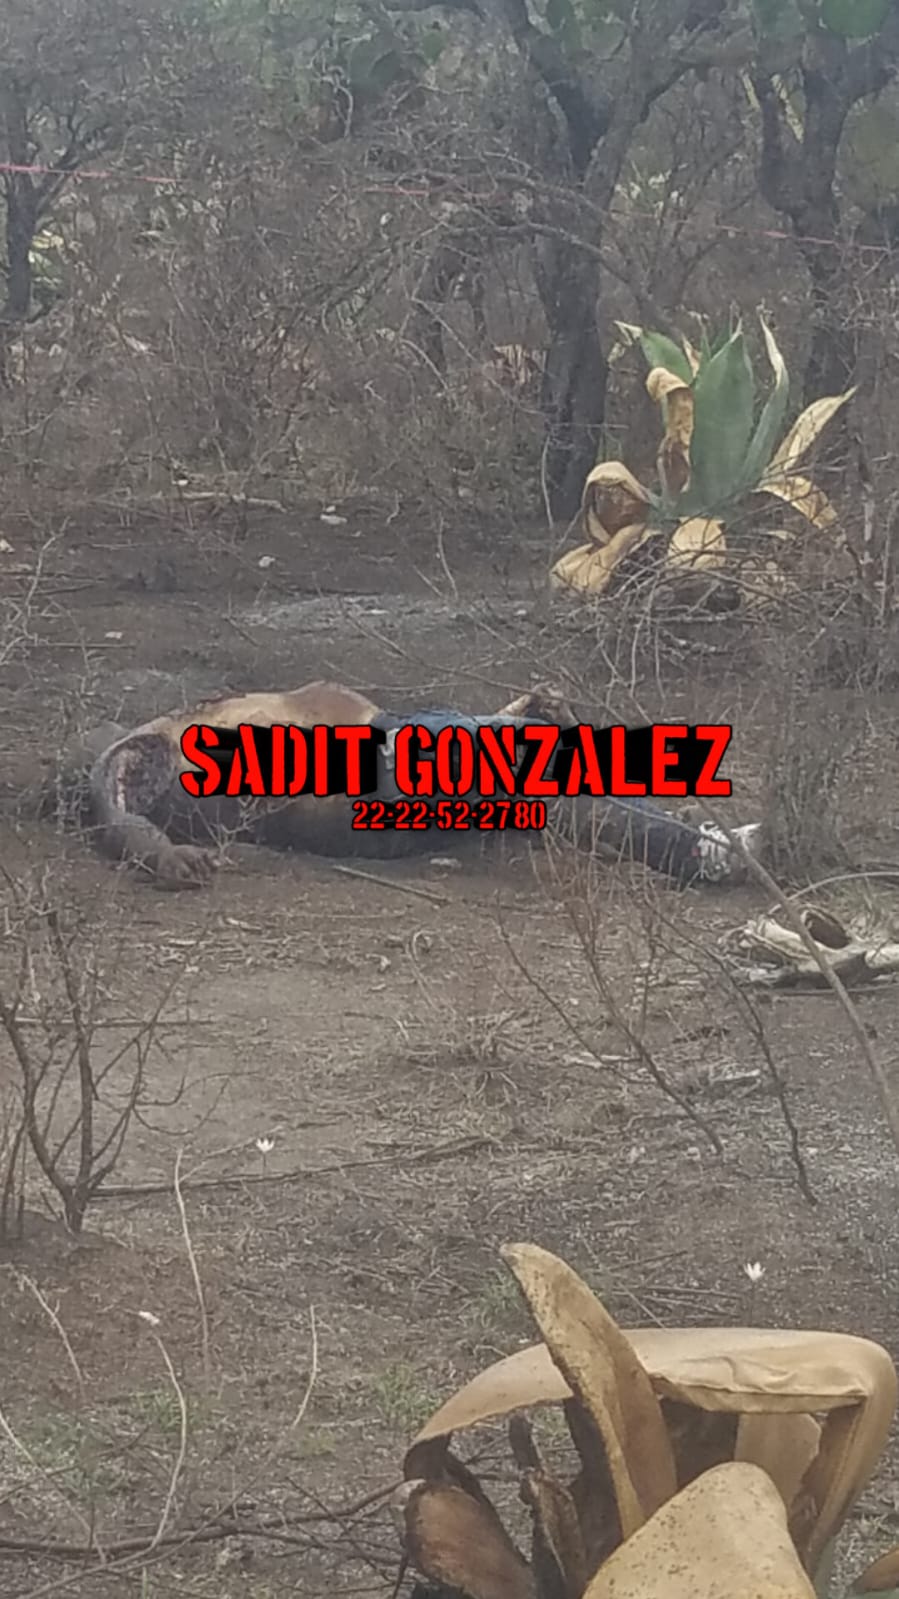 Hallan cadáver de un hombre en descomposición en Tecamachalco